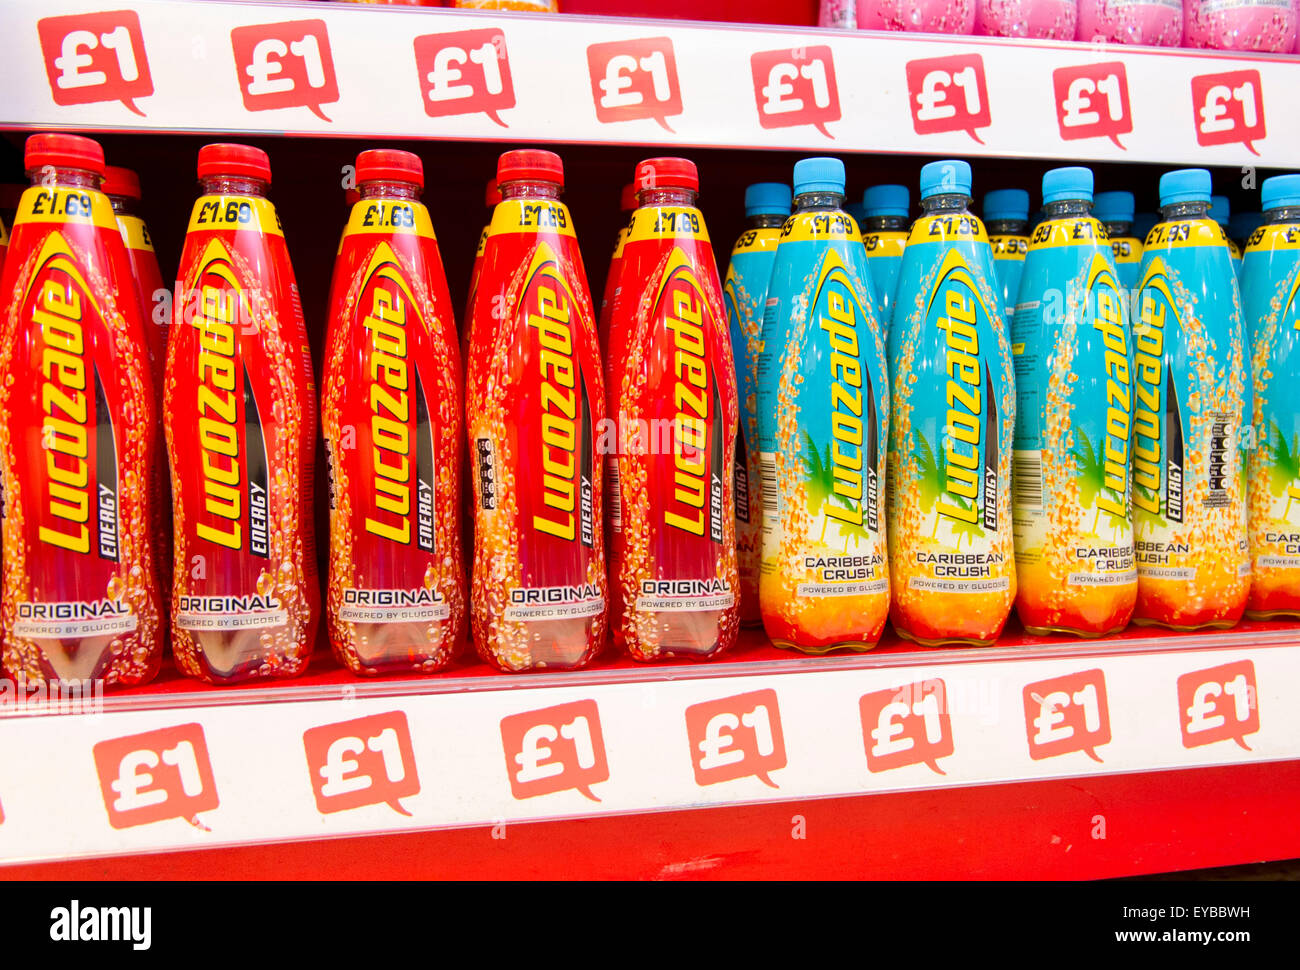 Lucozade vendita bevande per £1. I medici rivendicazione bevande zuccherate sono una delle principali cause di obesità e diabete. Foto Stock